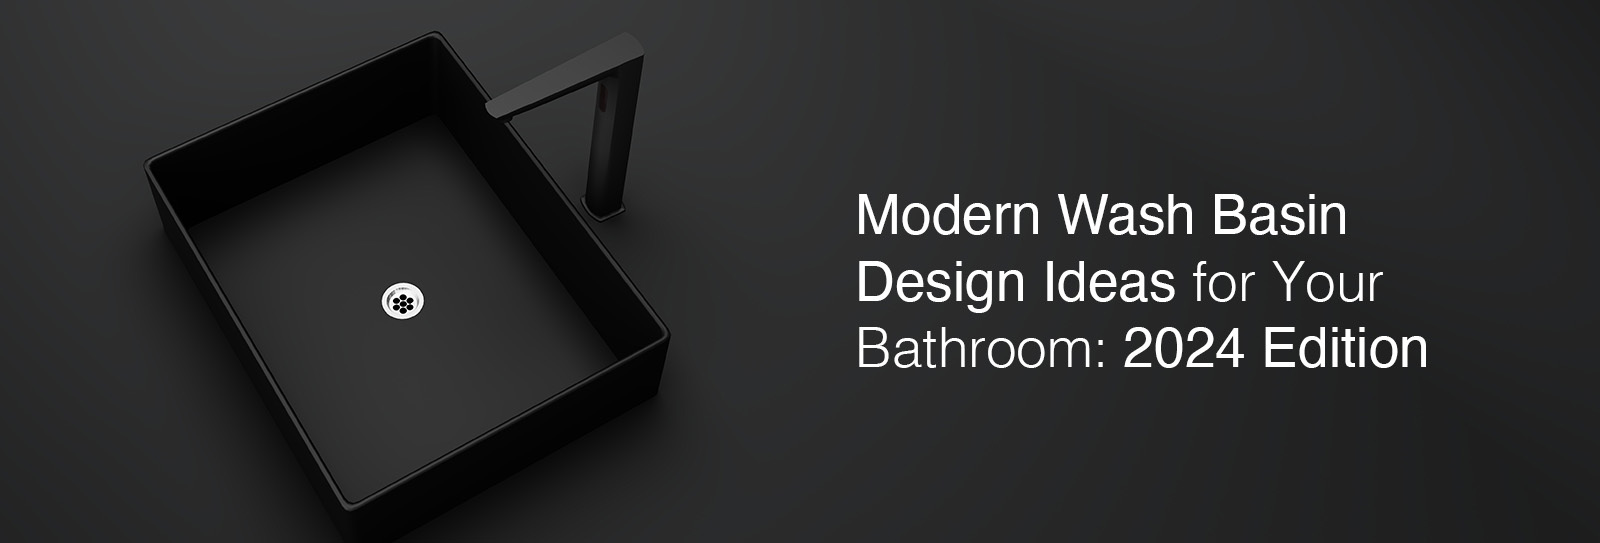 Modern Wash Basin Design